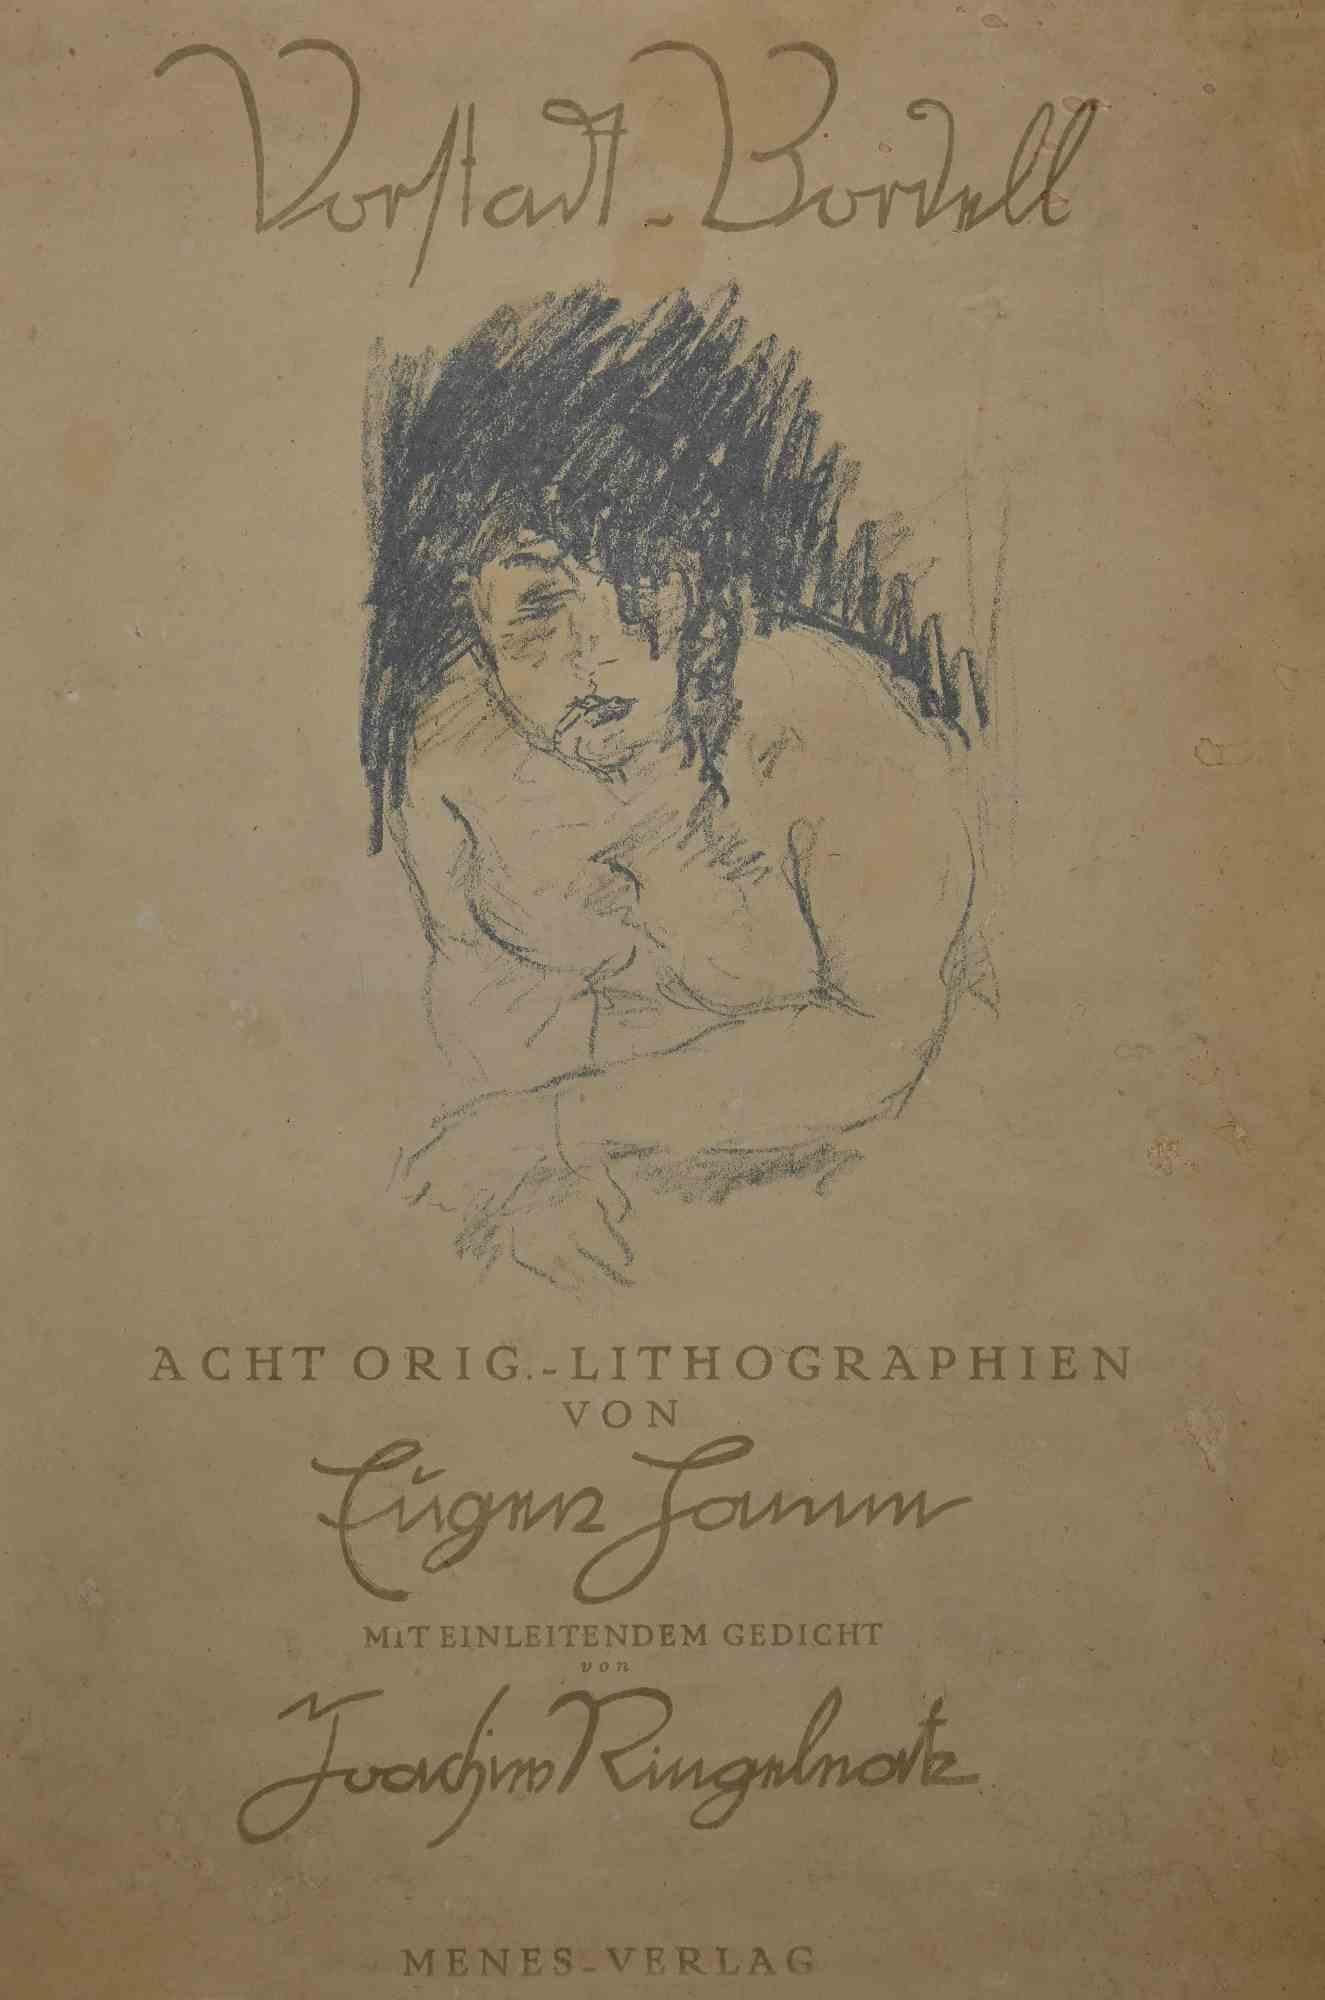 Abdeckung für Vorstadt-Brodel  ist eine Original-Lithographie, die 1922 von Eugen Hamm, einem deutschen Künstler, geschaffen wurde.

In gutem Zustand.

Dieses Kunstwerk stellt eine Frau in einem Bordell dar.

Eugen Hamm  (1885-1930) - Deutscher